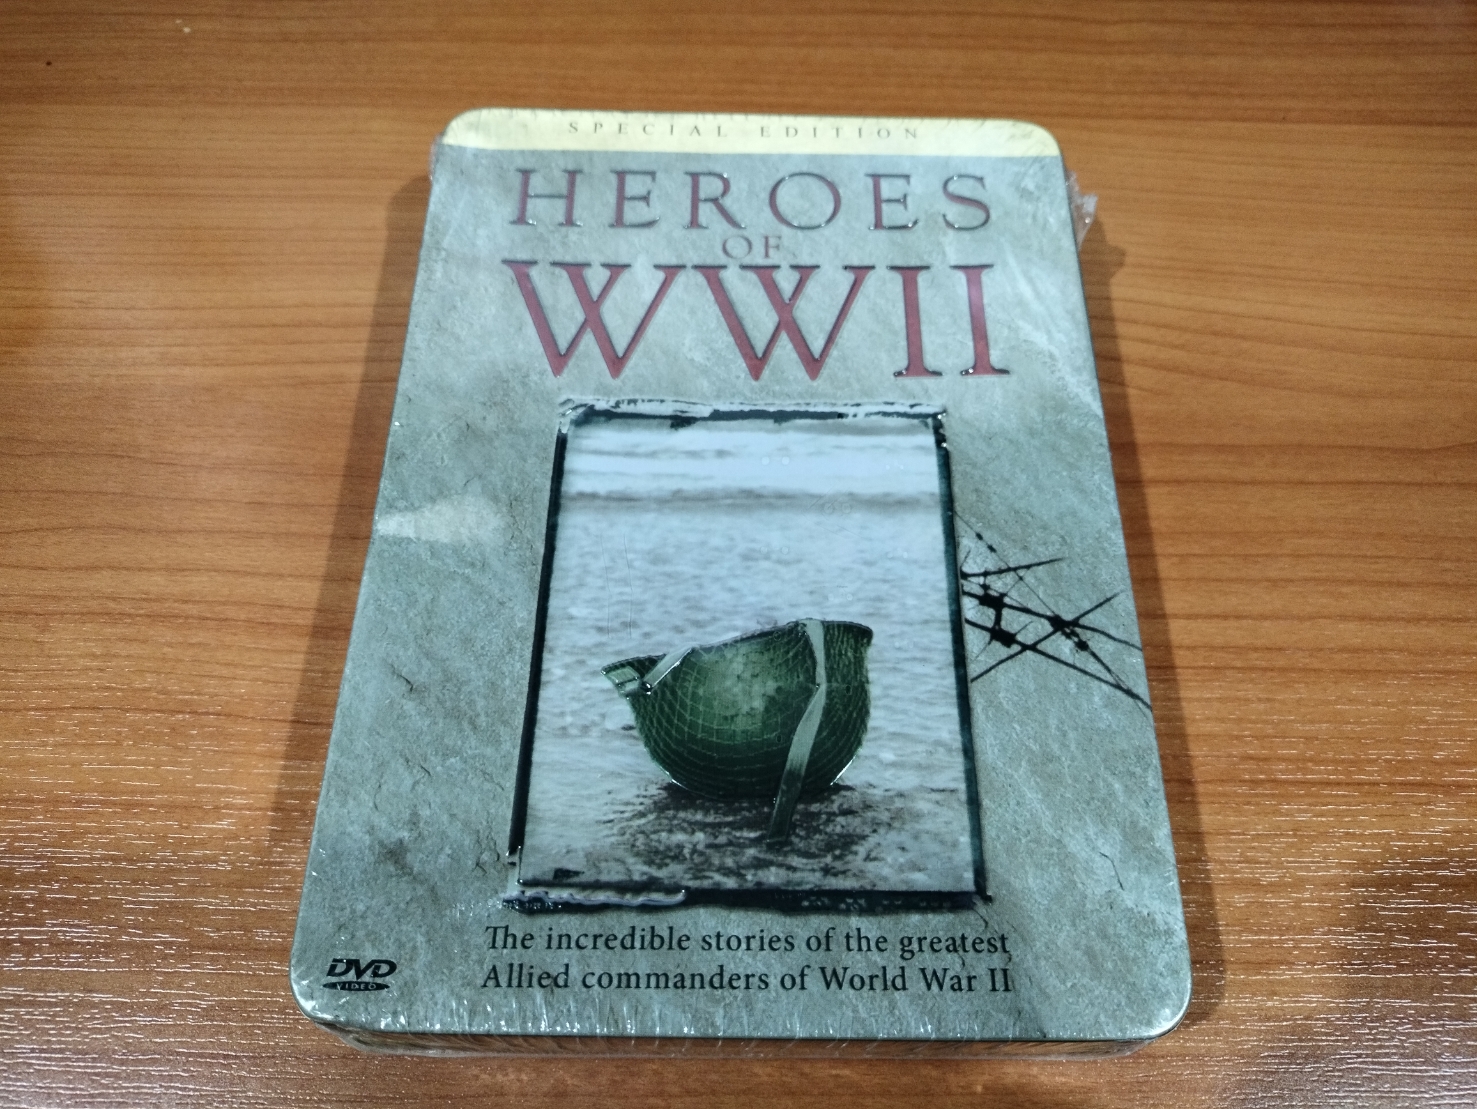 DVD  ดีวีดีสารคดีเล่าถึงการทำสงครามโลกครั้งที่ 2 (SPECIAL EDITION HEROES OF WW II )